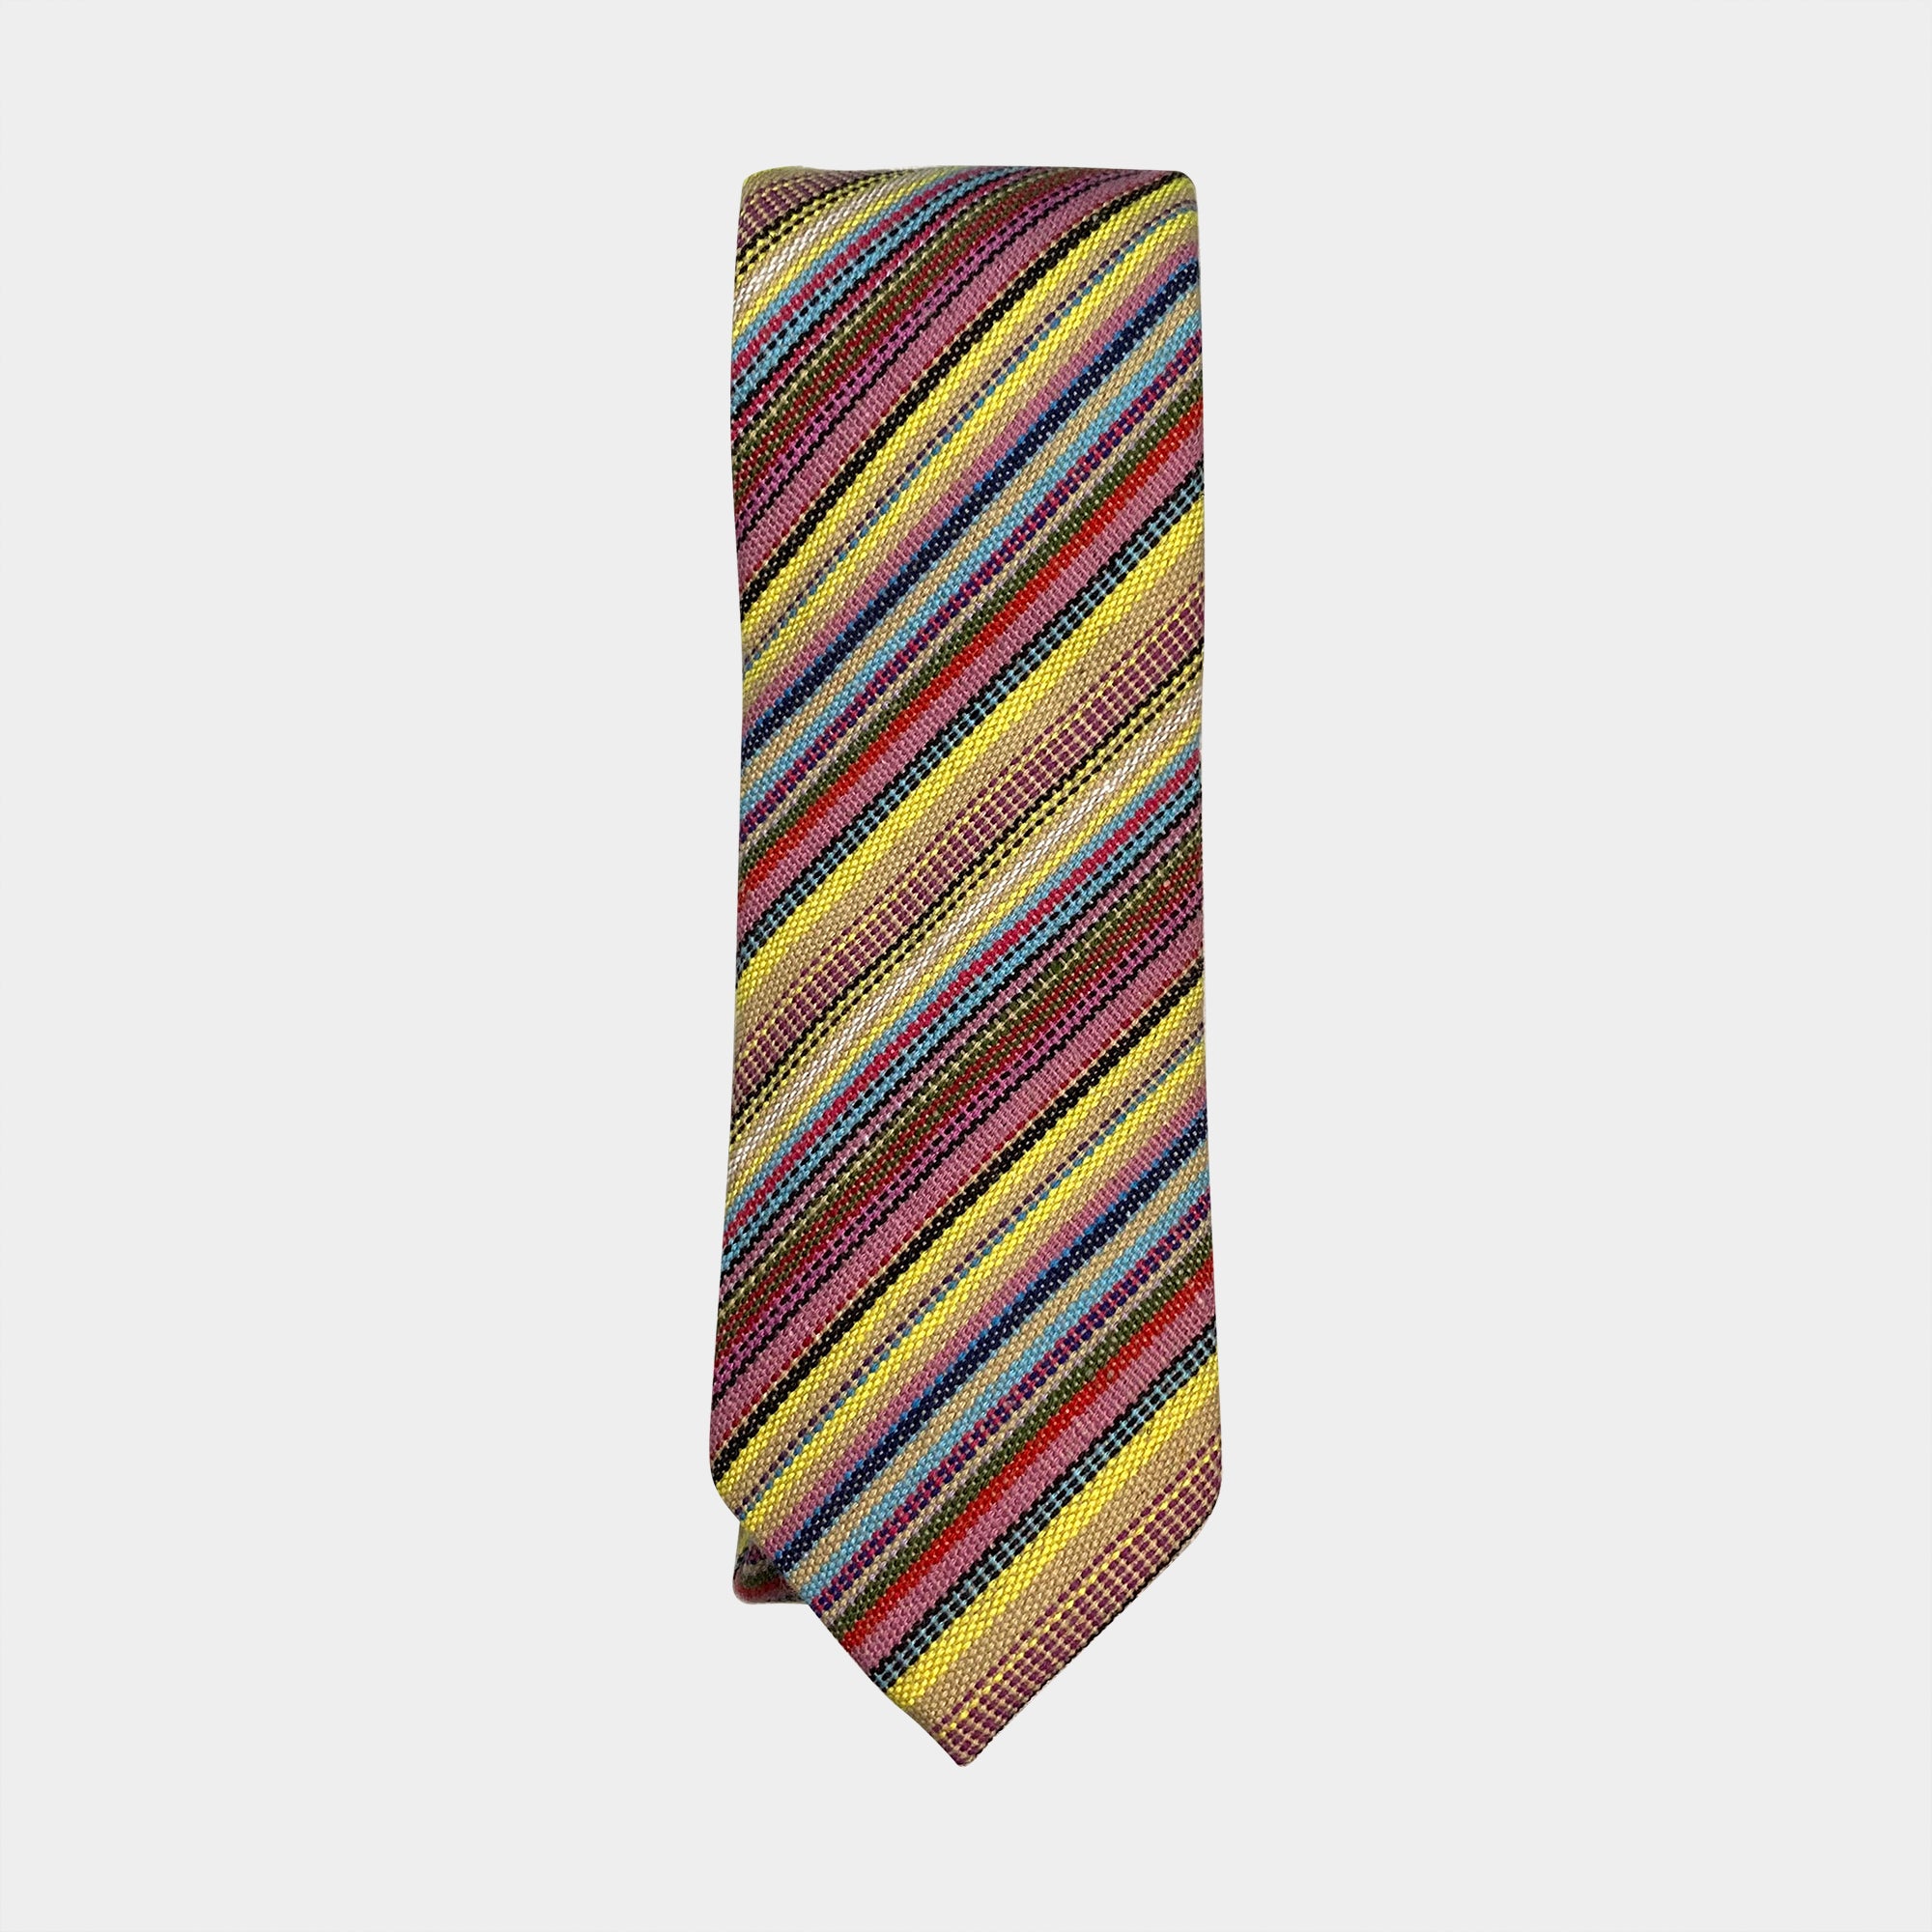 WILDER - Men's Tie